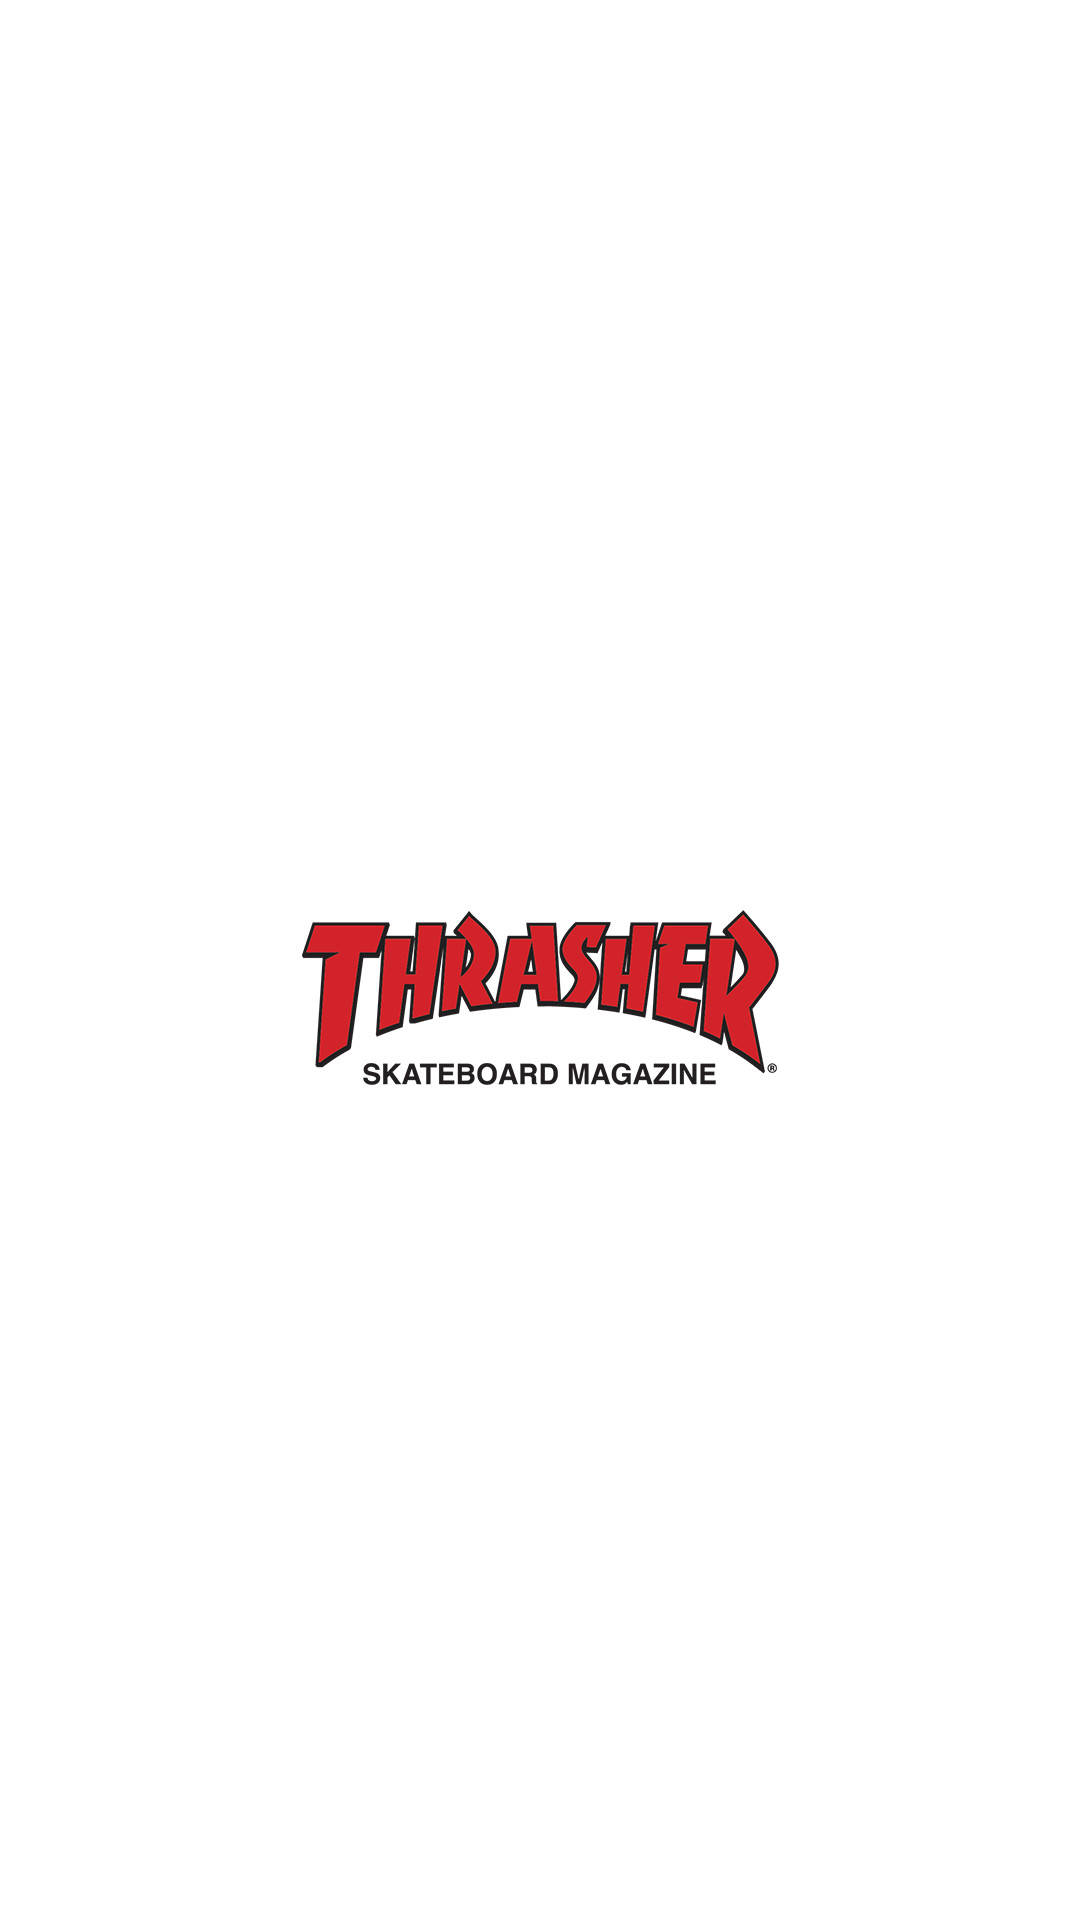 Thrasher Skateboard Magazine Logo Background